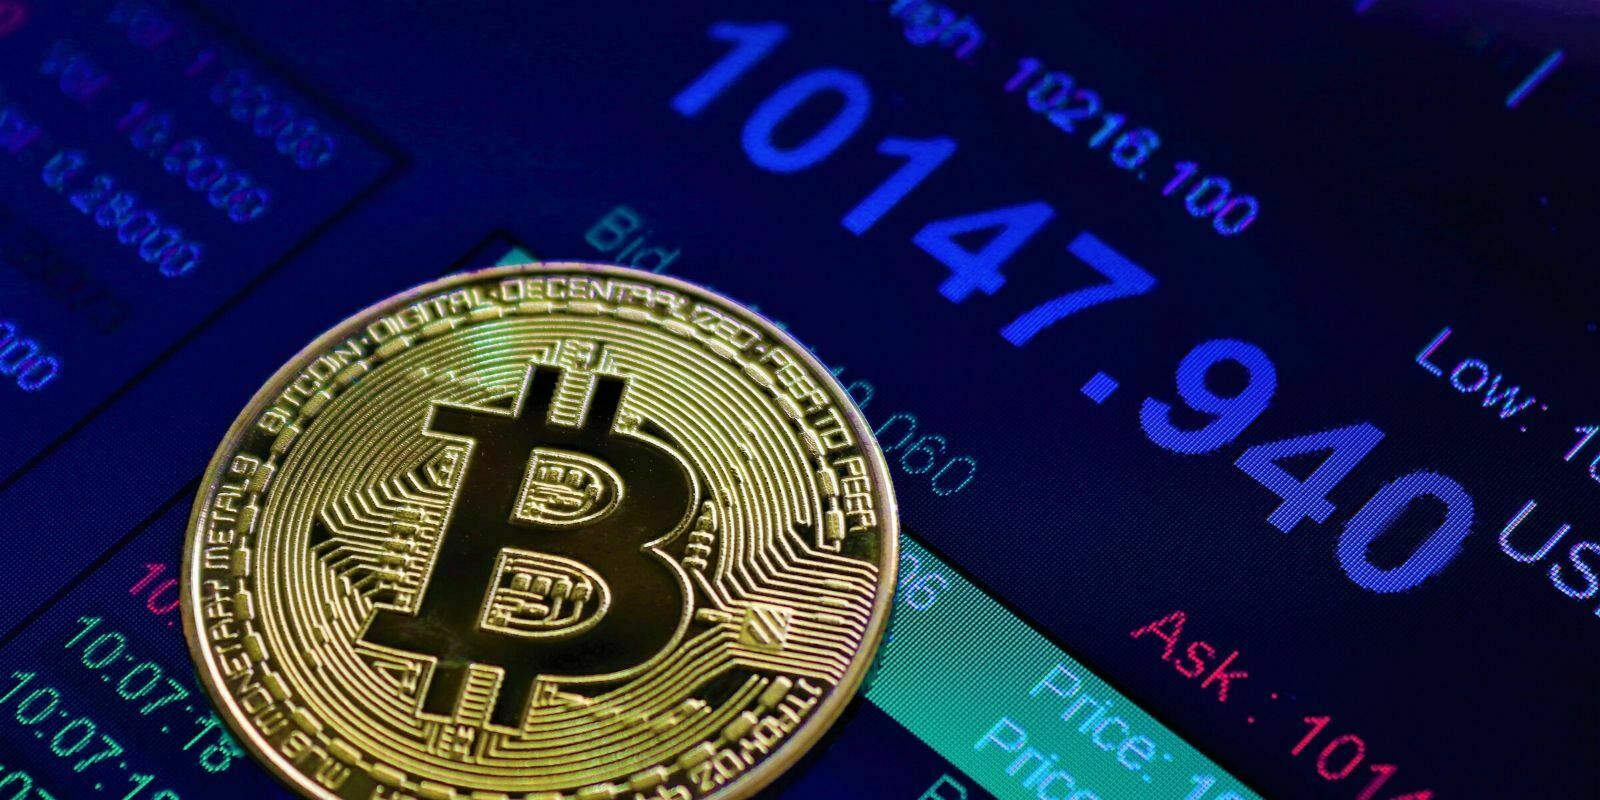 Le Bitcoin fait un bond de 40% après que Xi Jinping approuve la blockchain